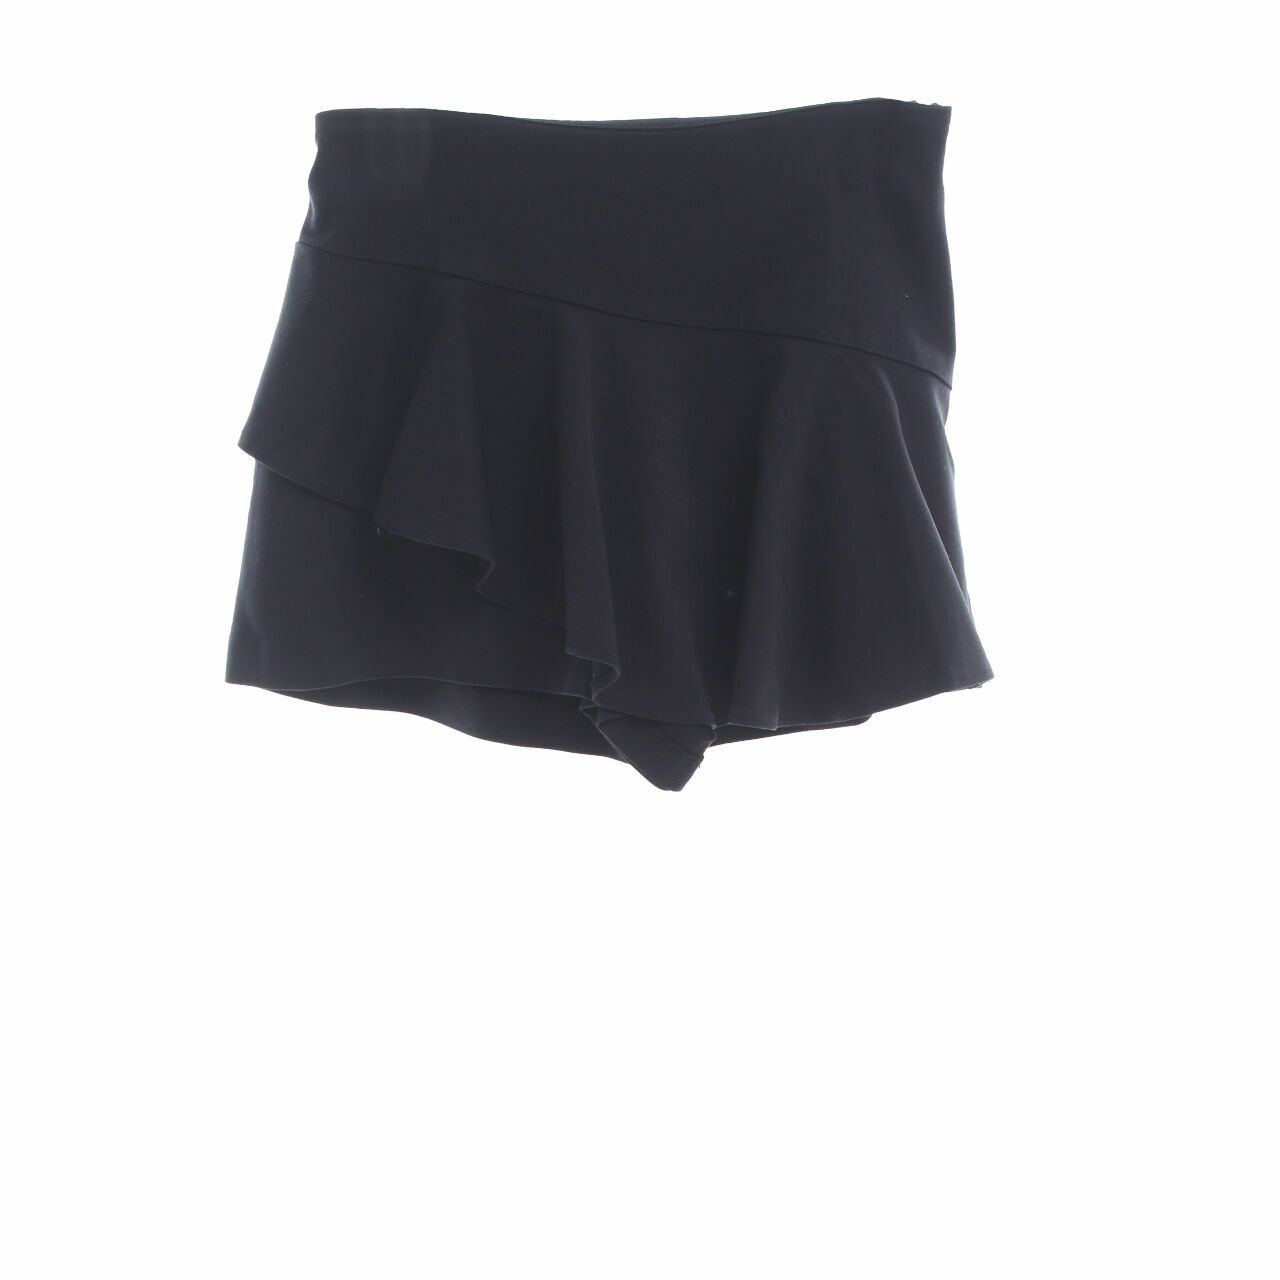 Zara Black Skort Short Pants